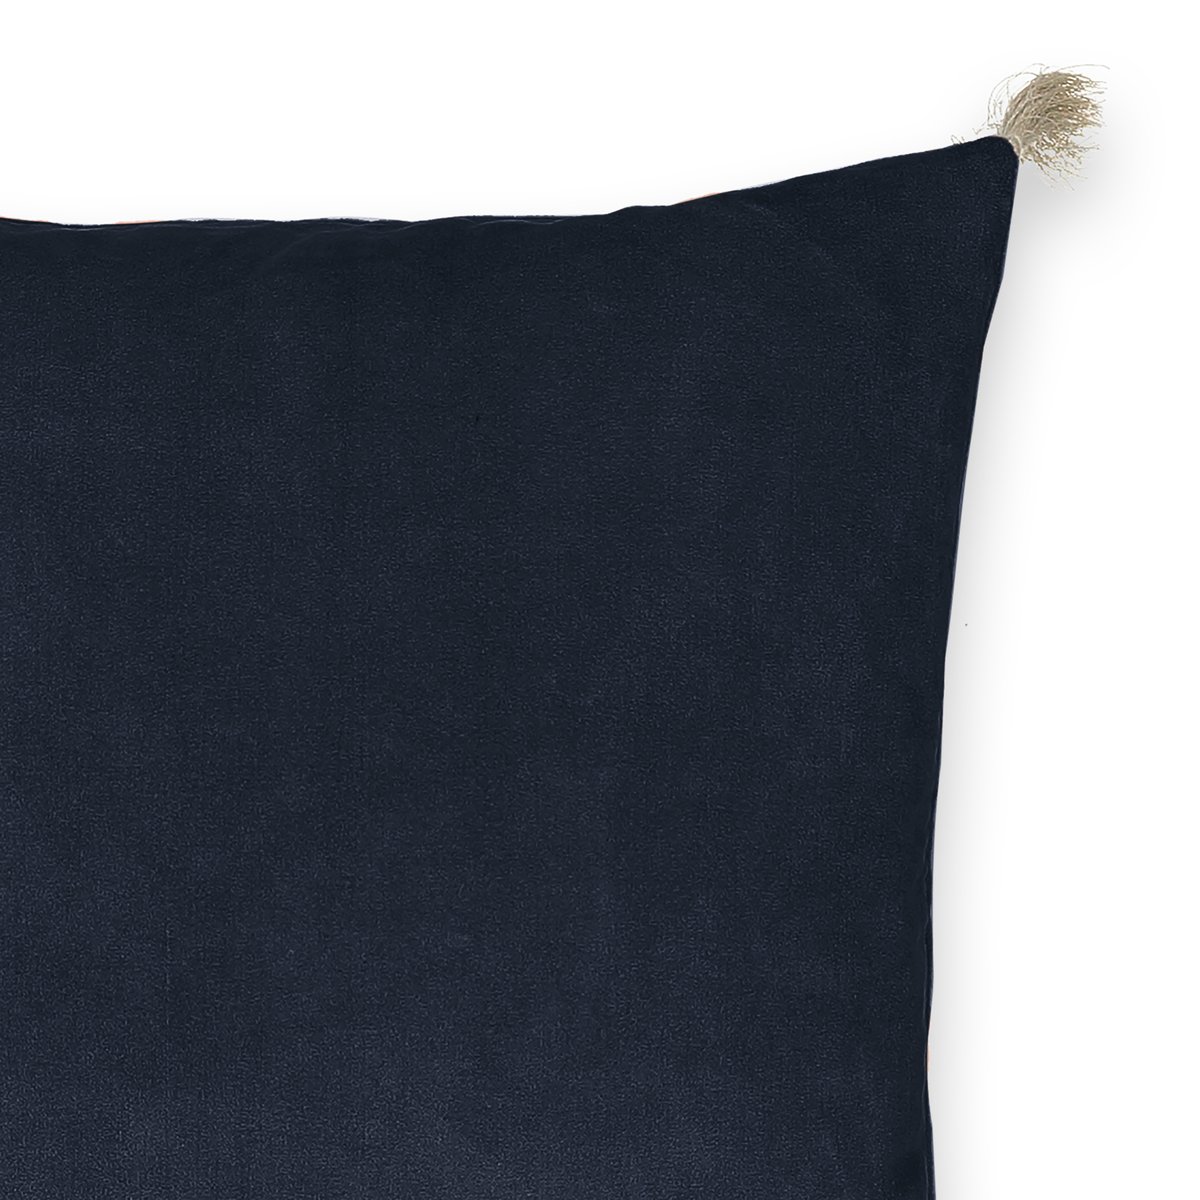 Чехол LaRedoute На подушку велюровый Cacolet 50 x 50 см синий, размер 50 x 50 см - фото 4